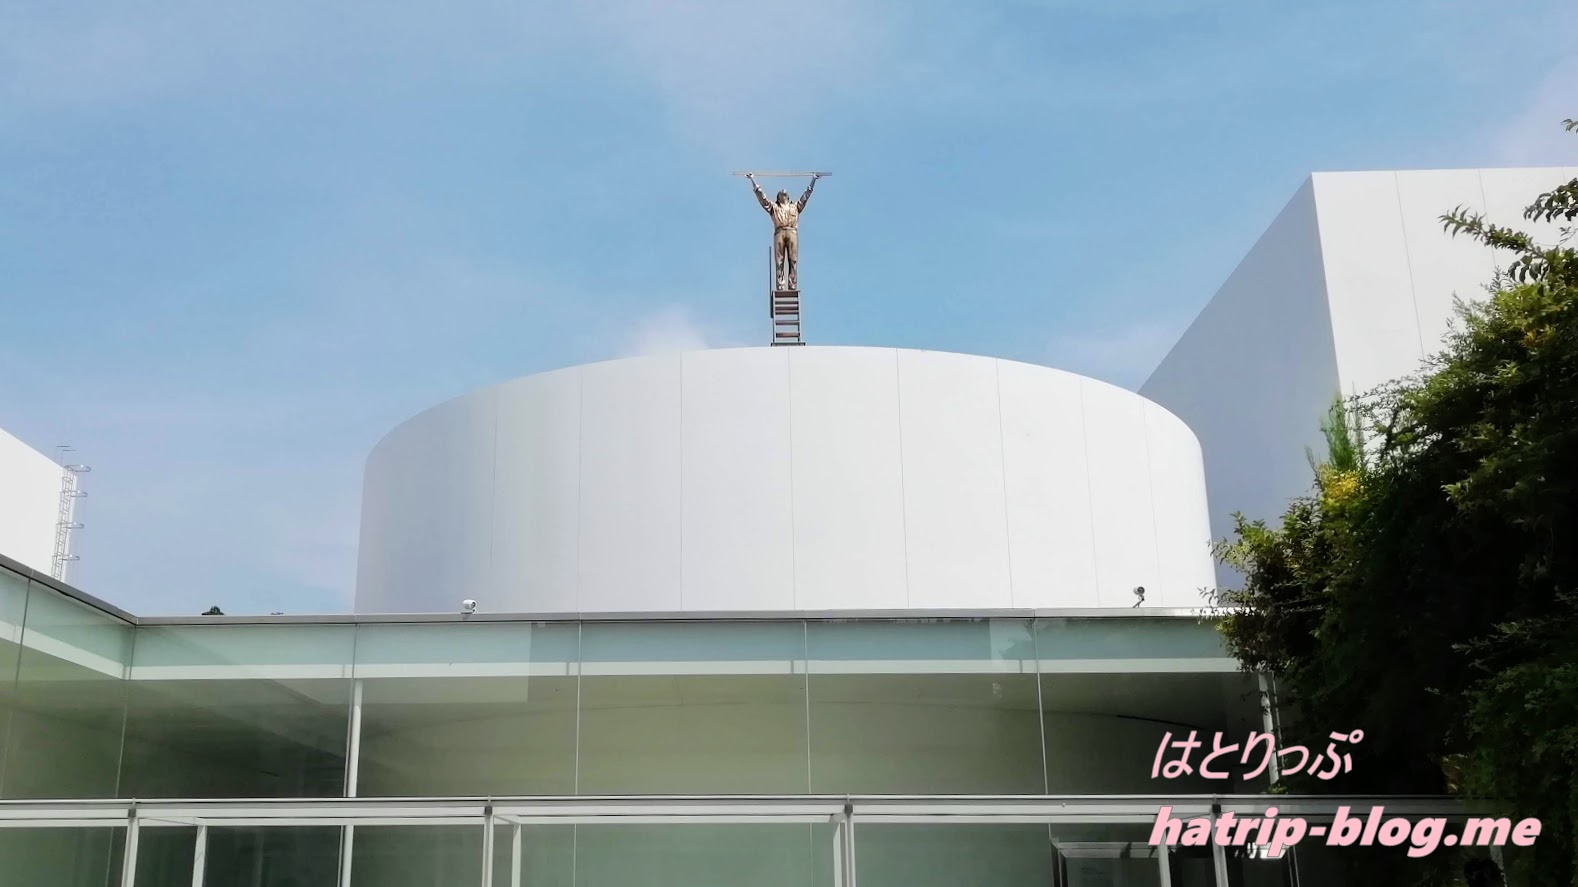 石川県金沢市 金沢21世紀美術館 雲を測る男